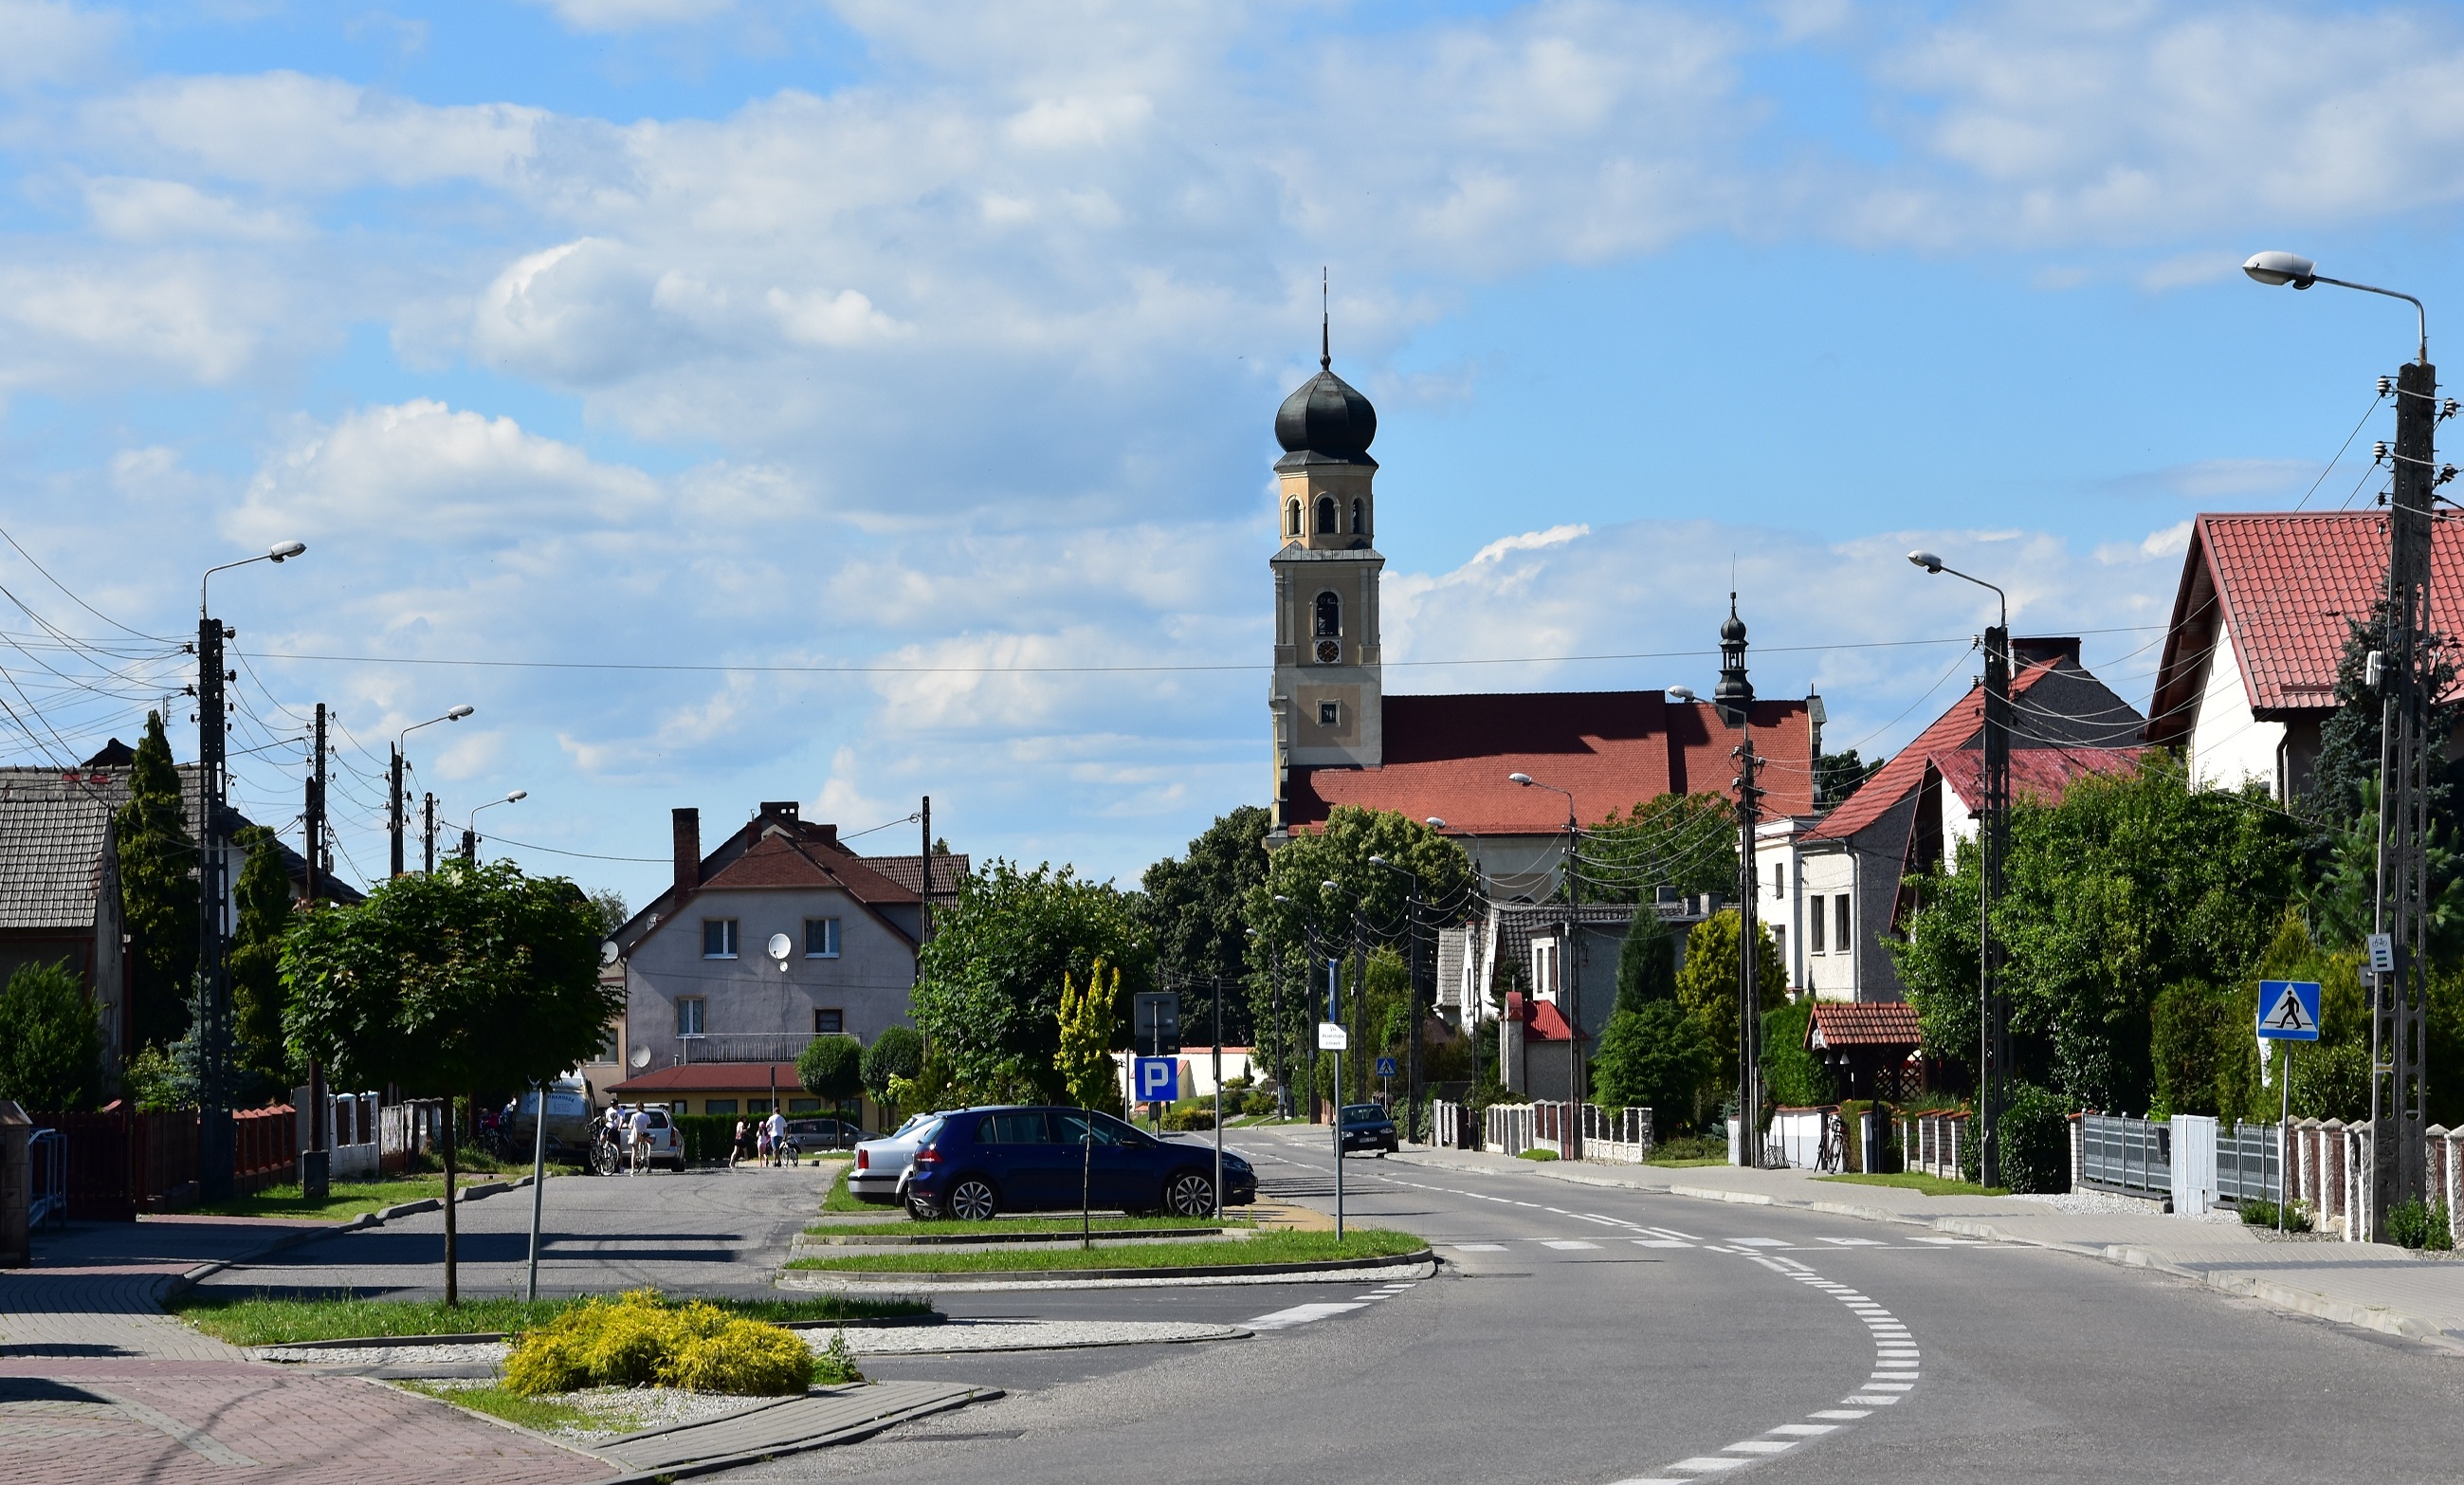 Tworków, centrum wsi, kościół na końcu nawsia. Fot. Maria Lipok-Bierwiaczonek, 2020.